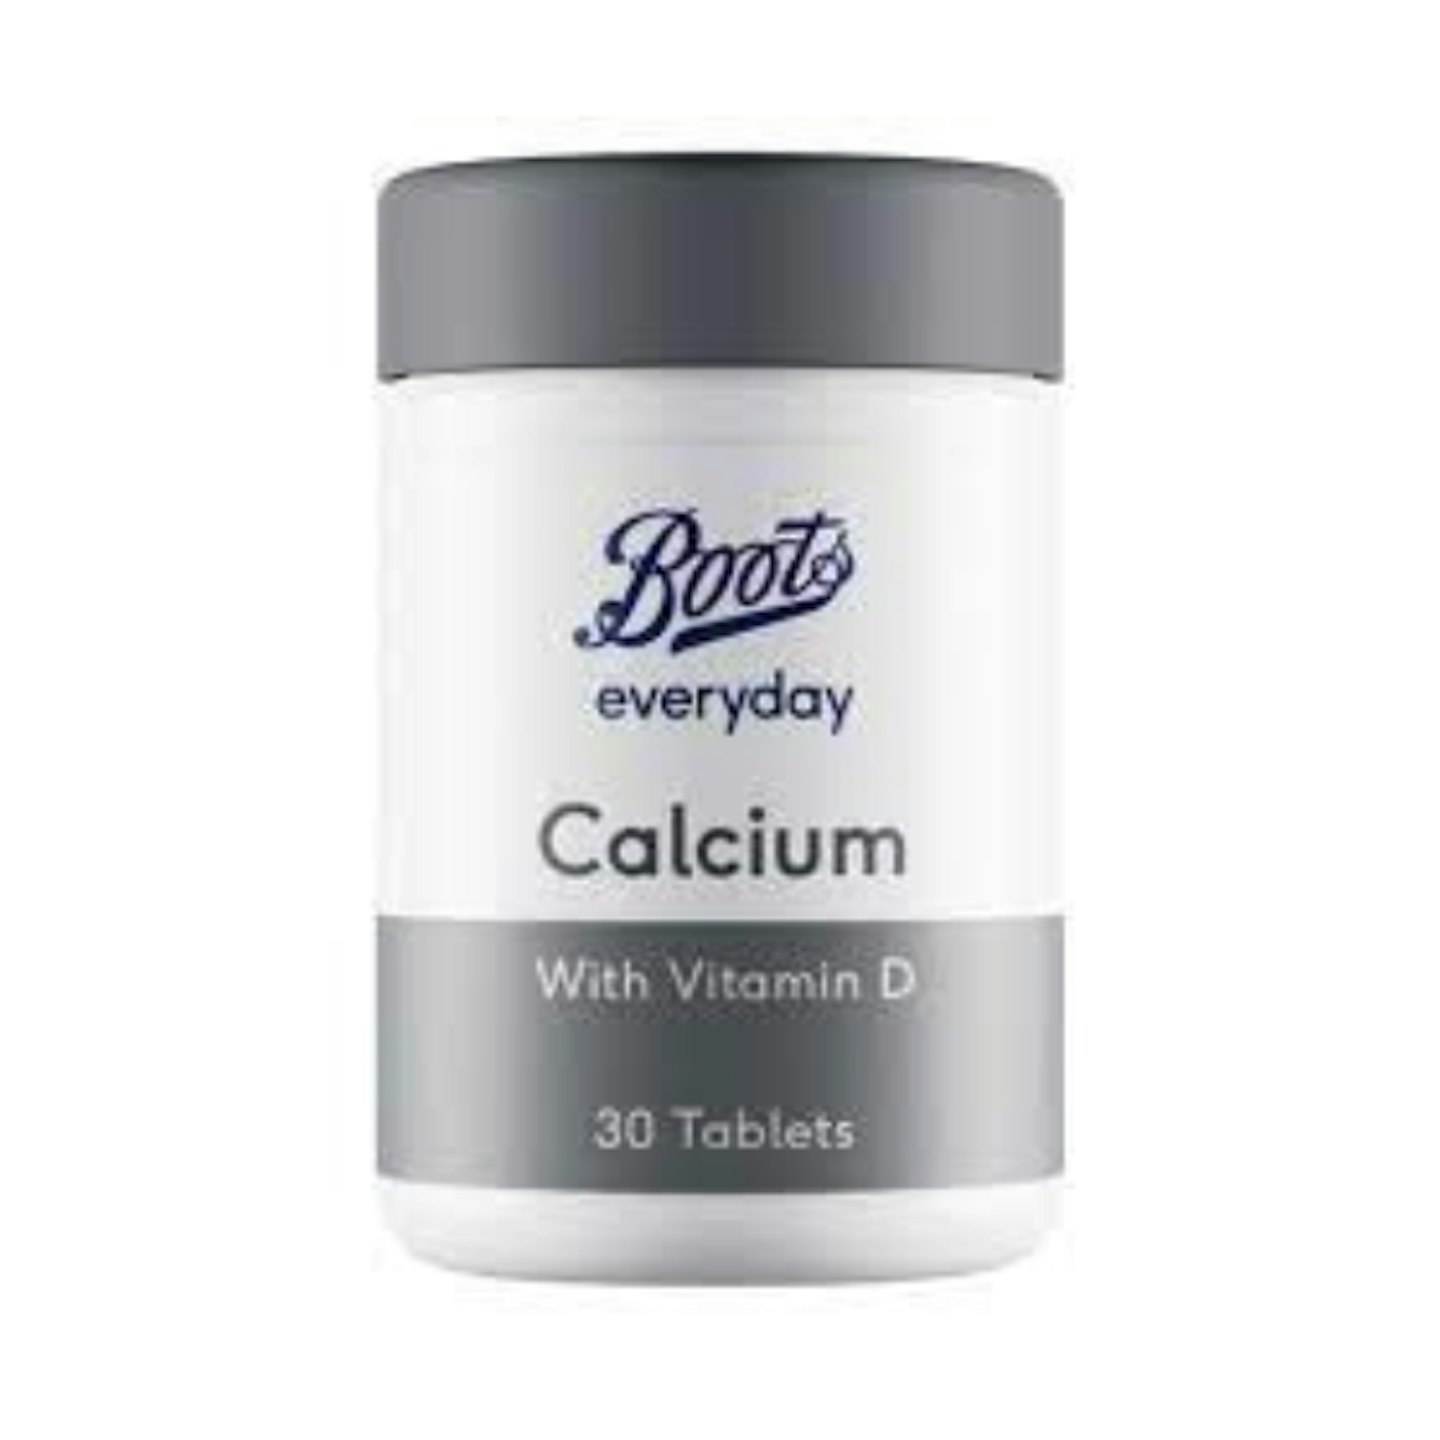 Boots Calcium Supplements 